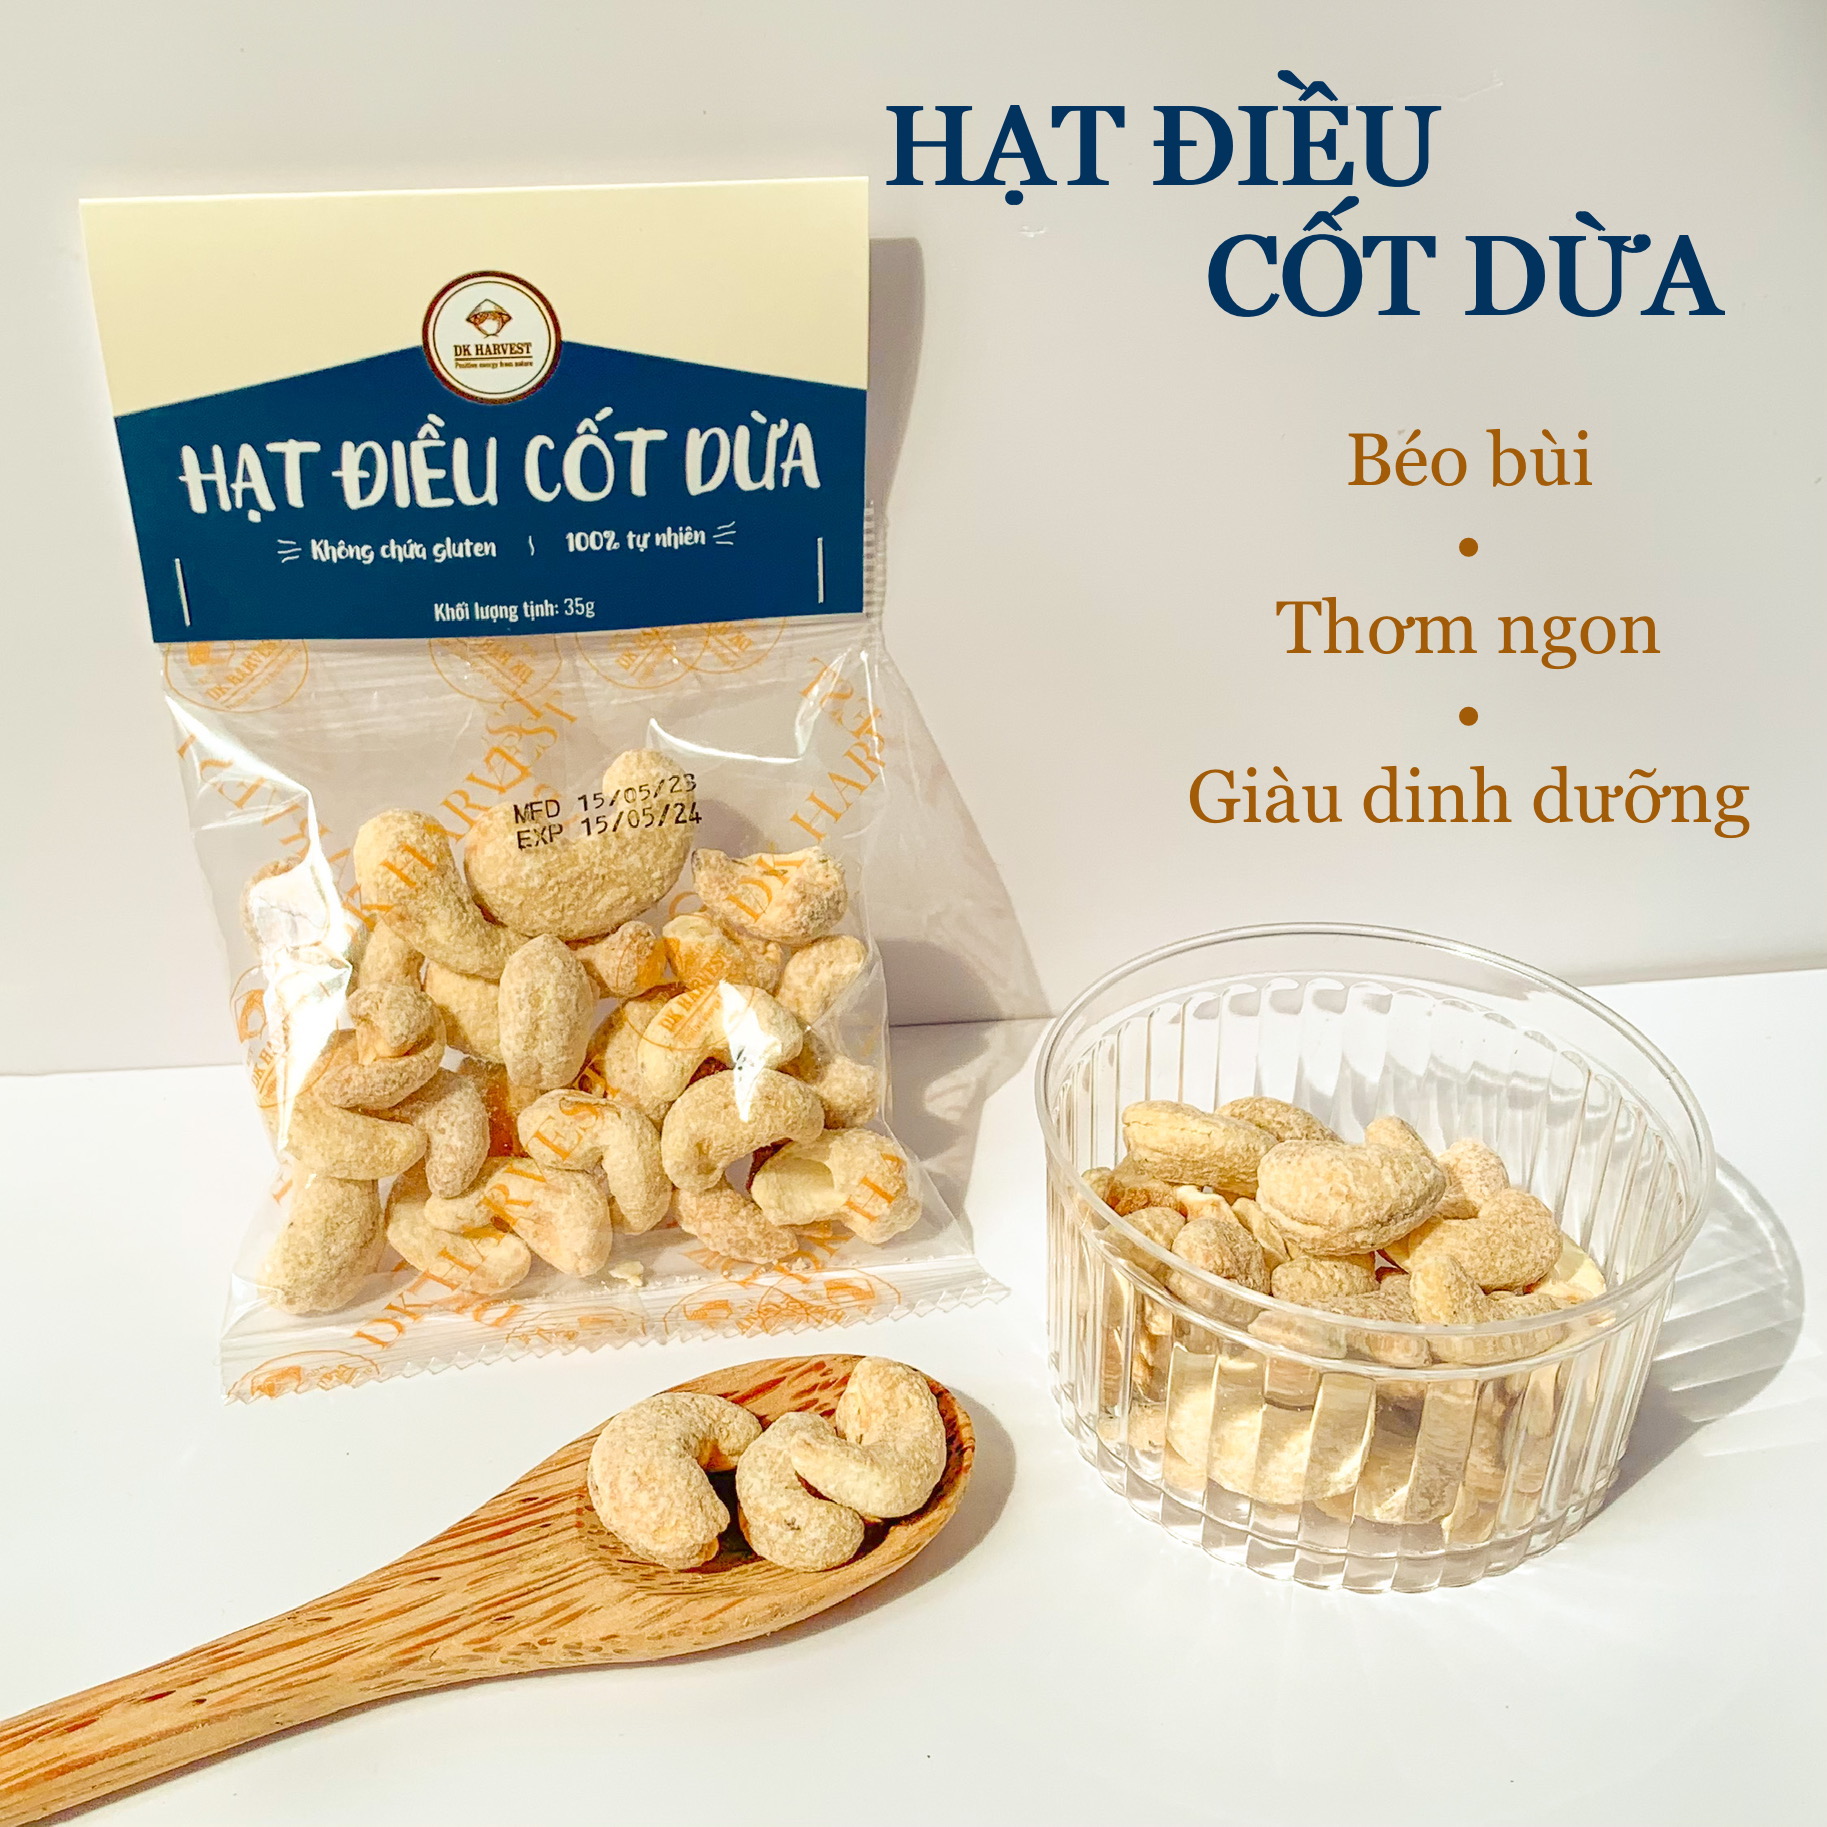 Snack hạt điều rang cốt dừa DK Harvest - không chất bảo quản, Ăn kiêng, Ăn vặt healthy, Lành mạnh, Eat clean (túi 35g)